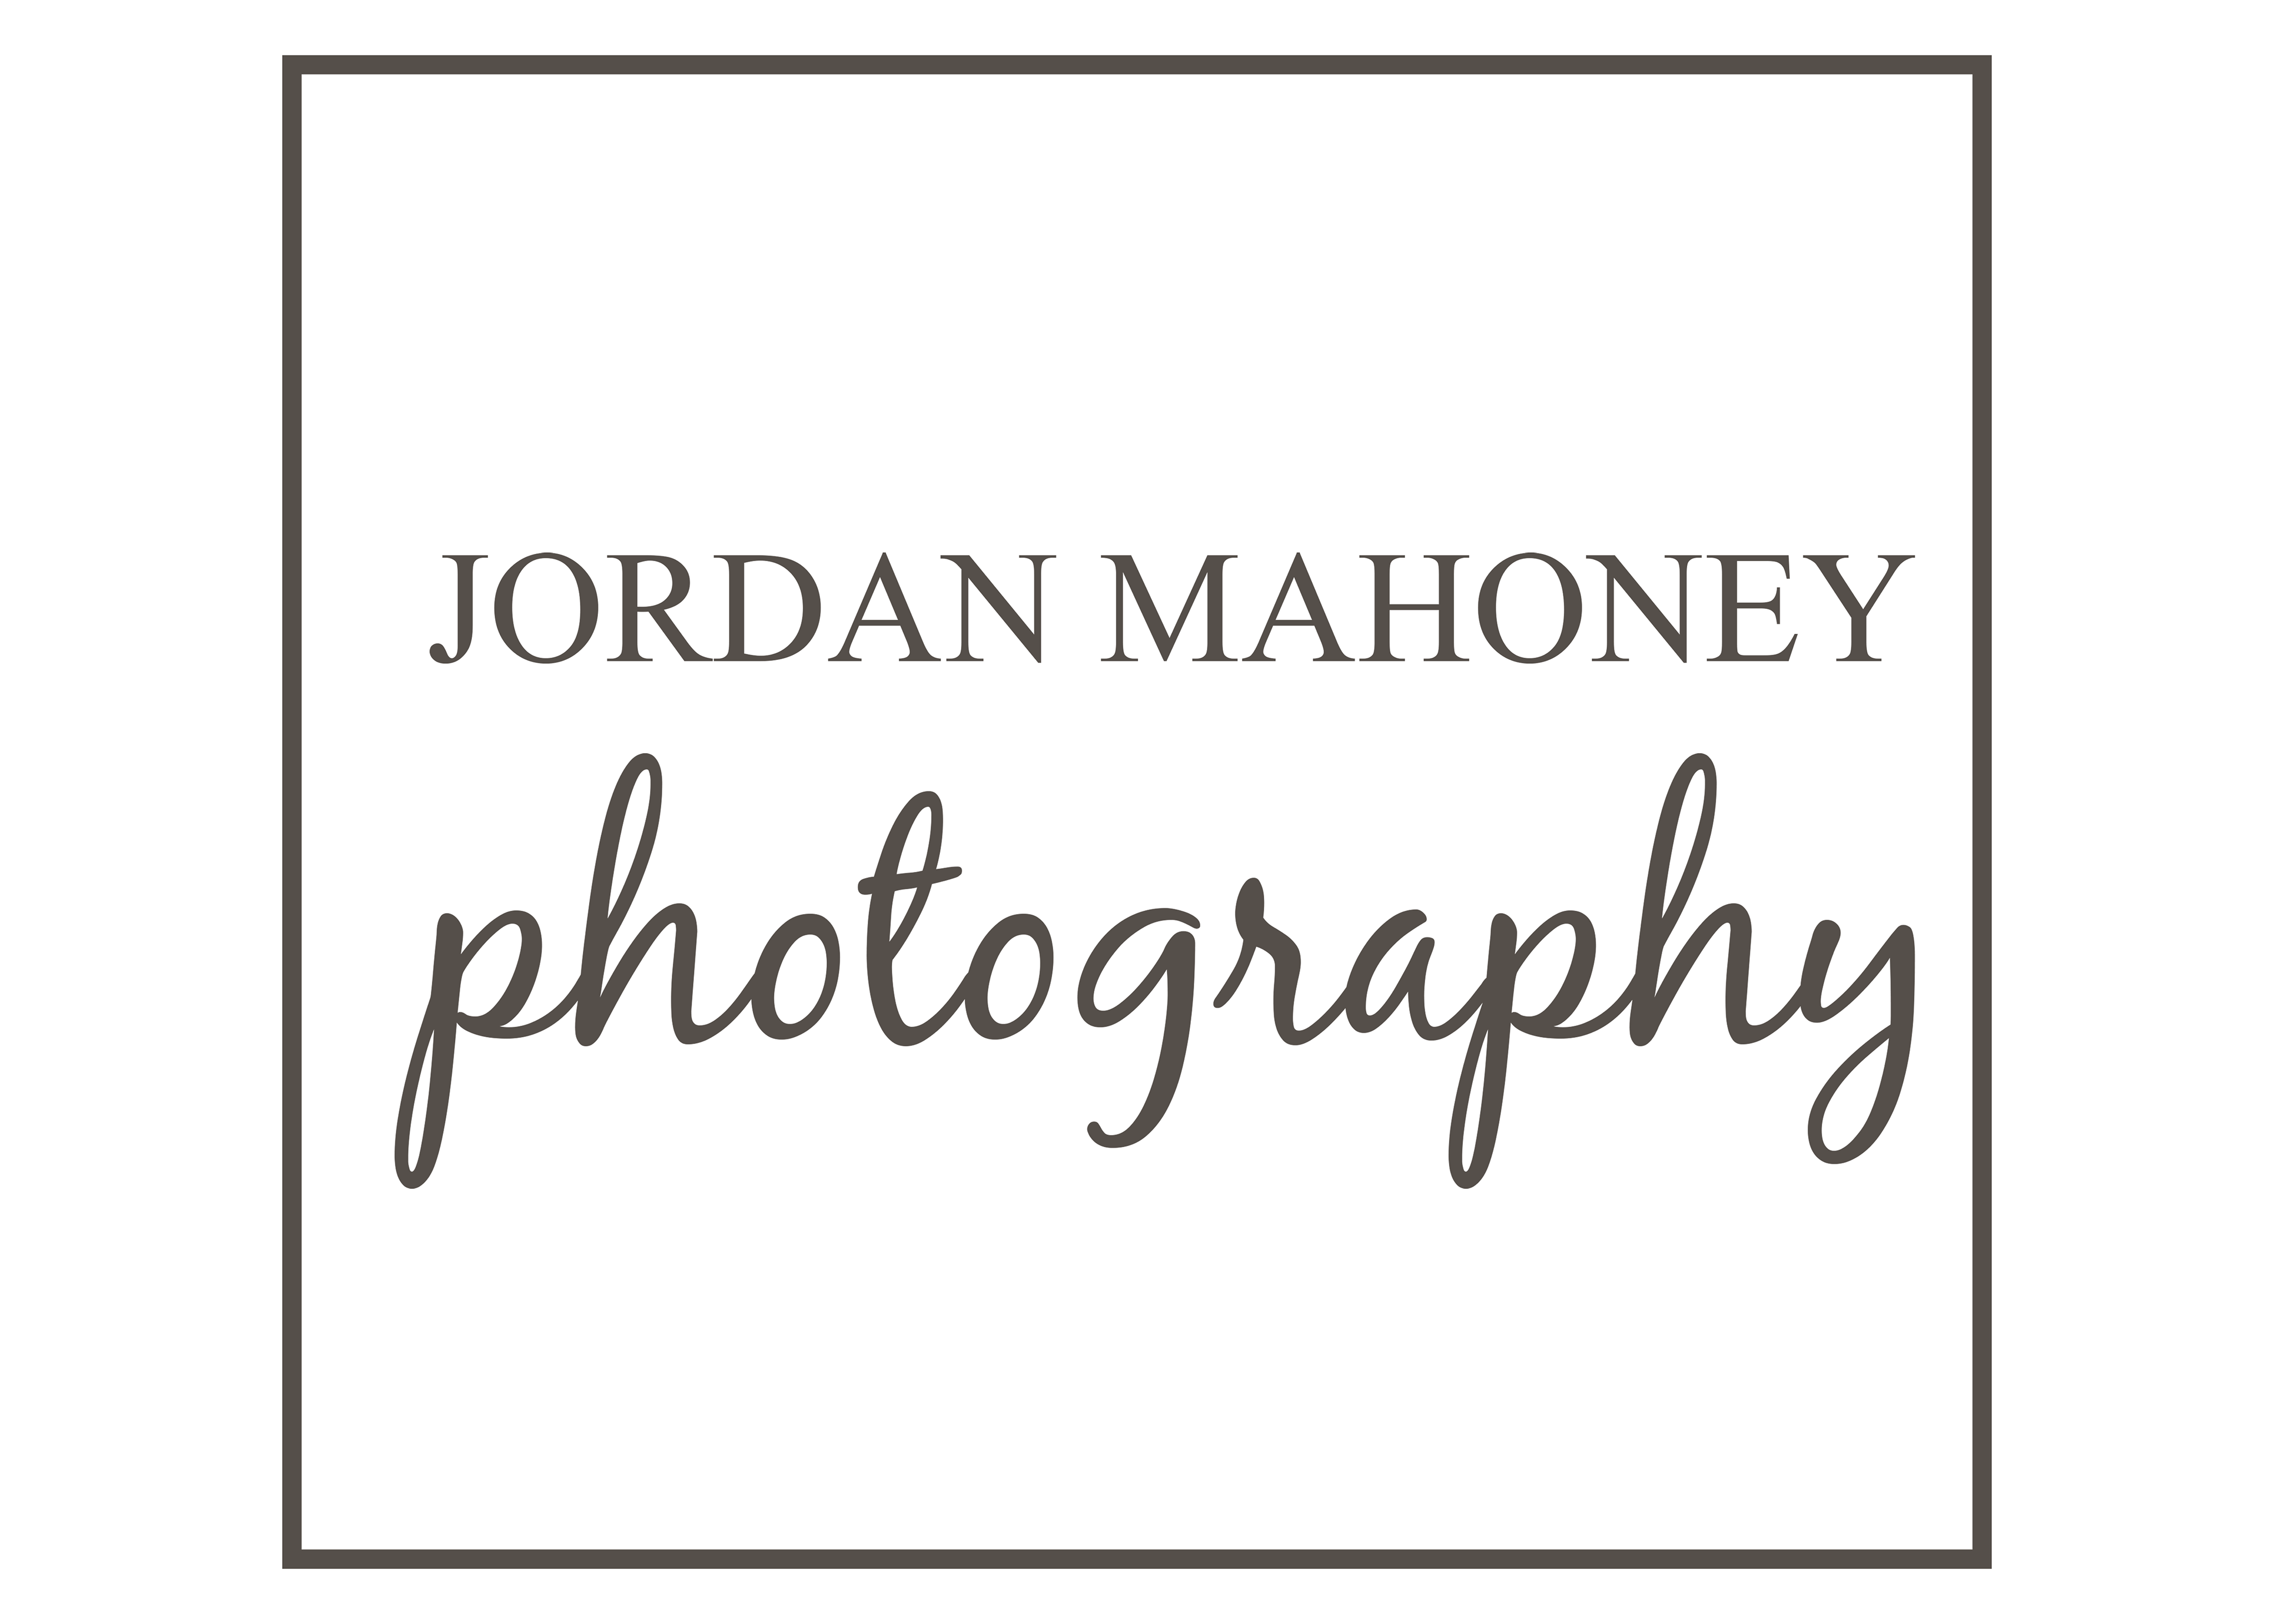 Jordan Mahoney